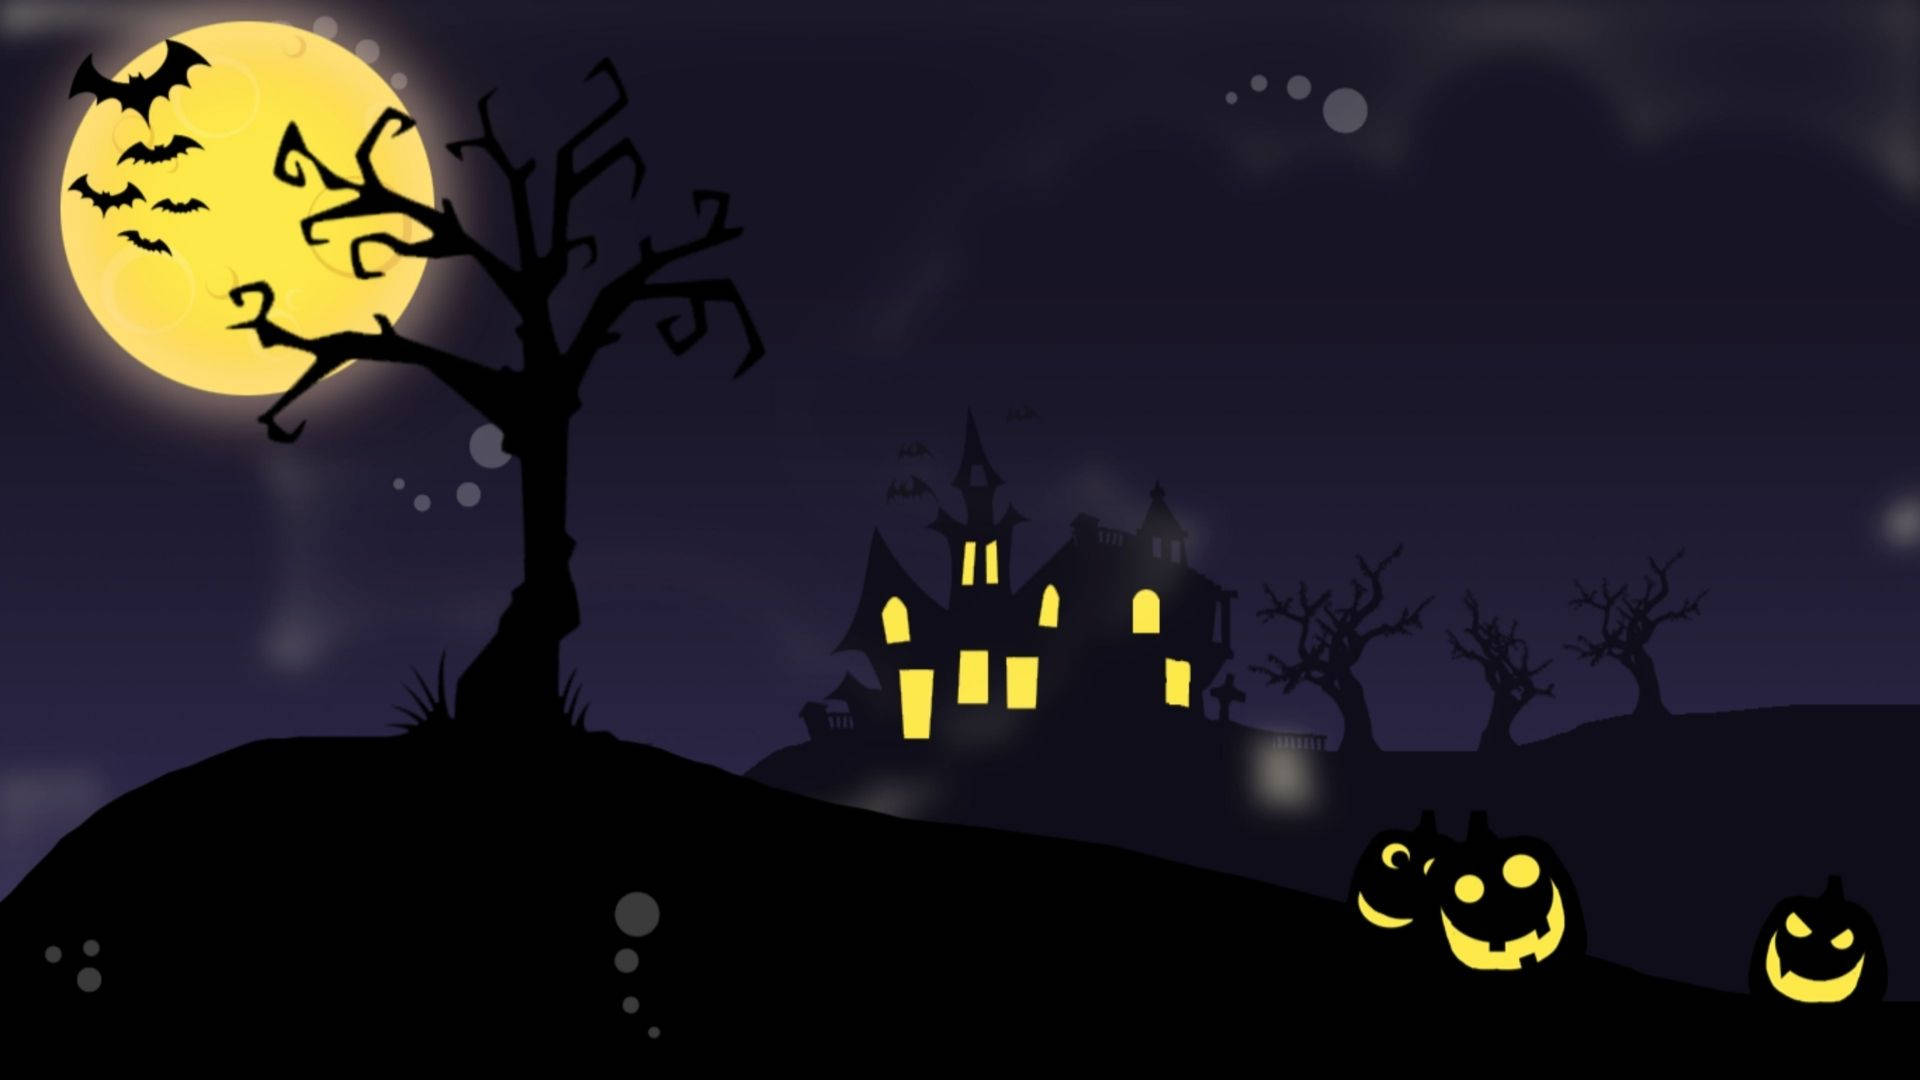 Download Cartoon Halloween Haunted House Wallpaper 